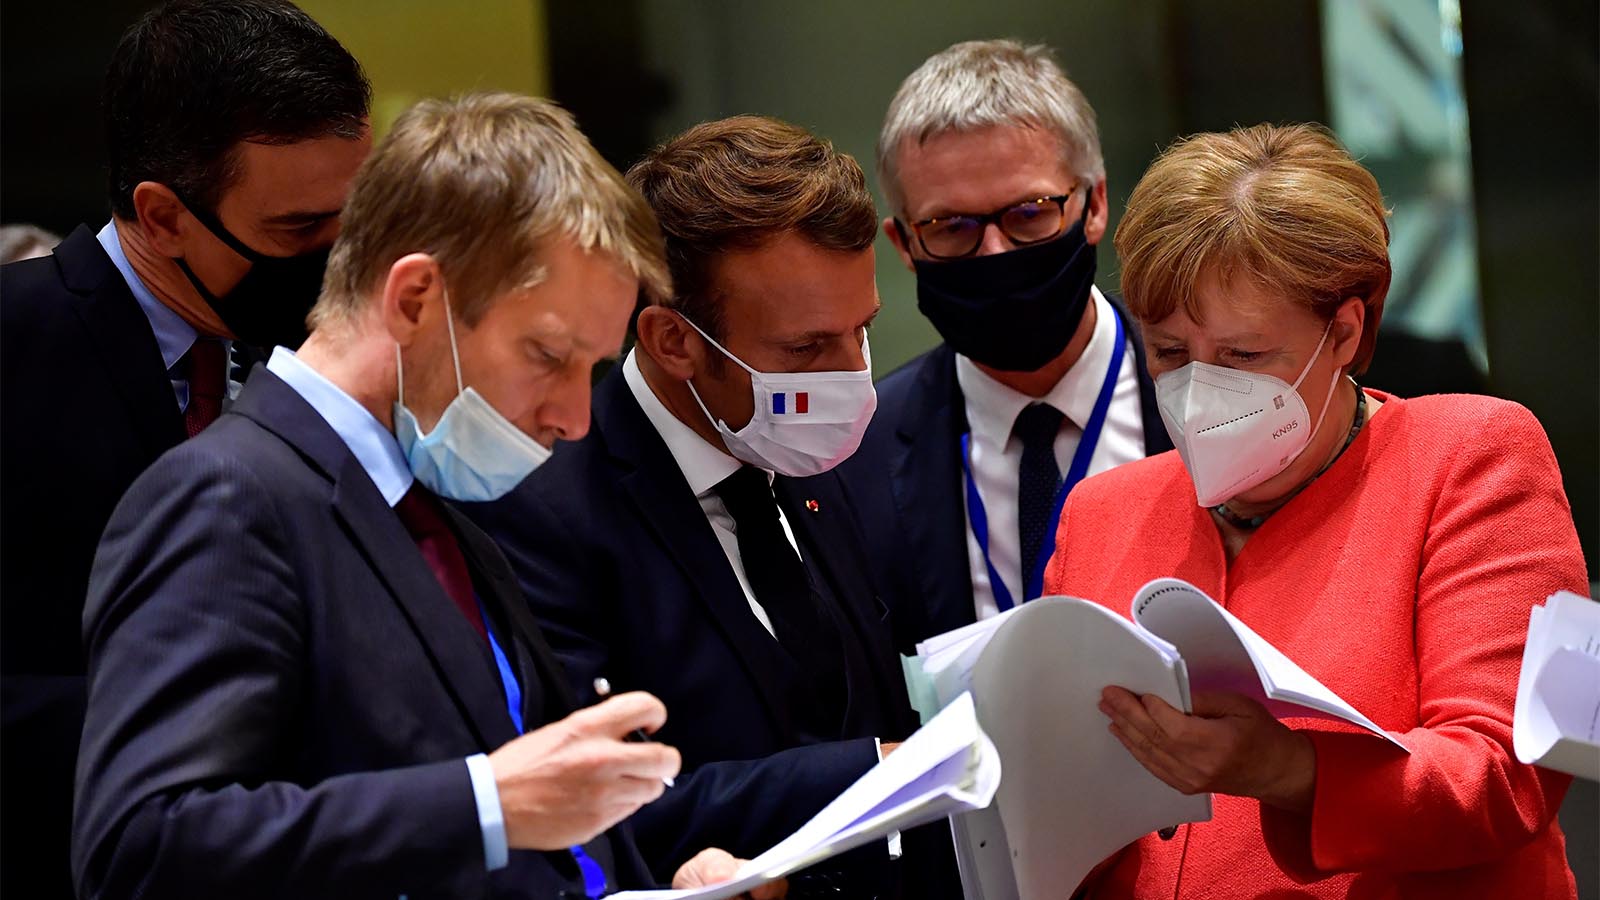 קנצלרית גרמניה אנגלה מרקל ונשיא צרפת עמנואל מקרון קוראים את התכנית הכלכלית של האיחוד האירופי במהלך ועידת האיחוד (John Thys, Pool Photo via AP)